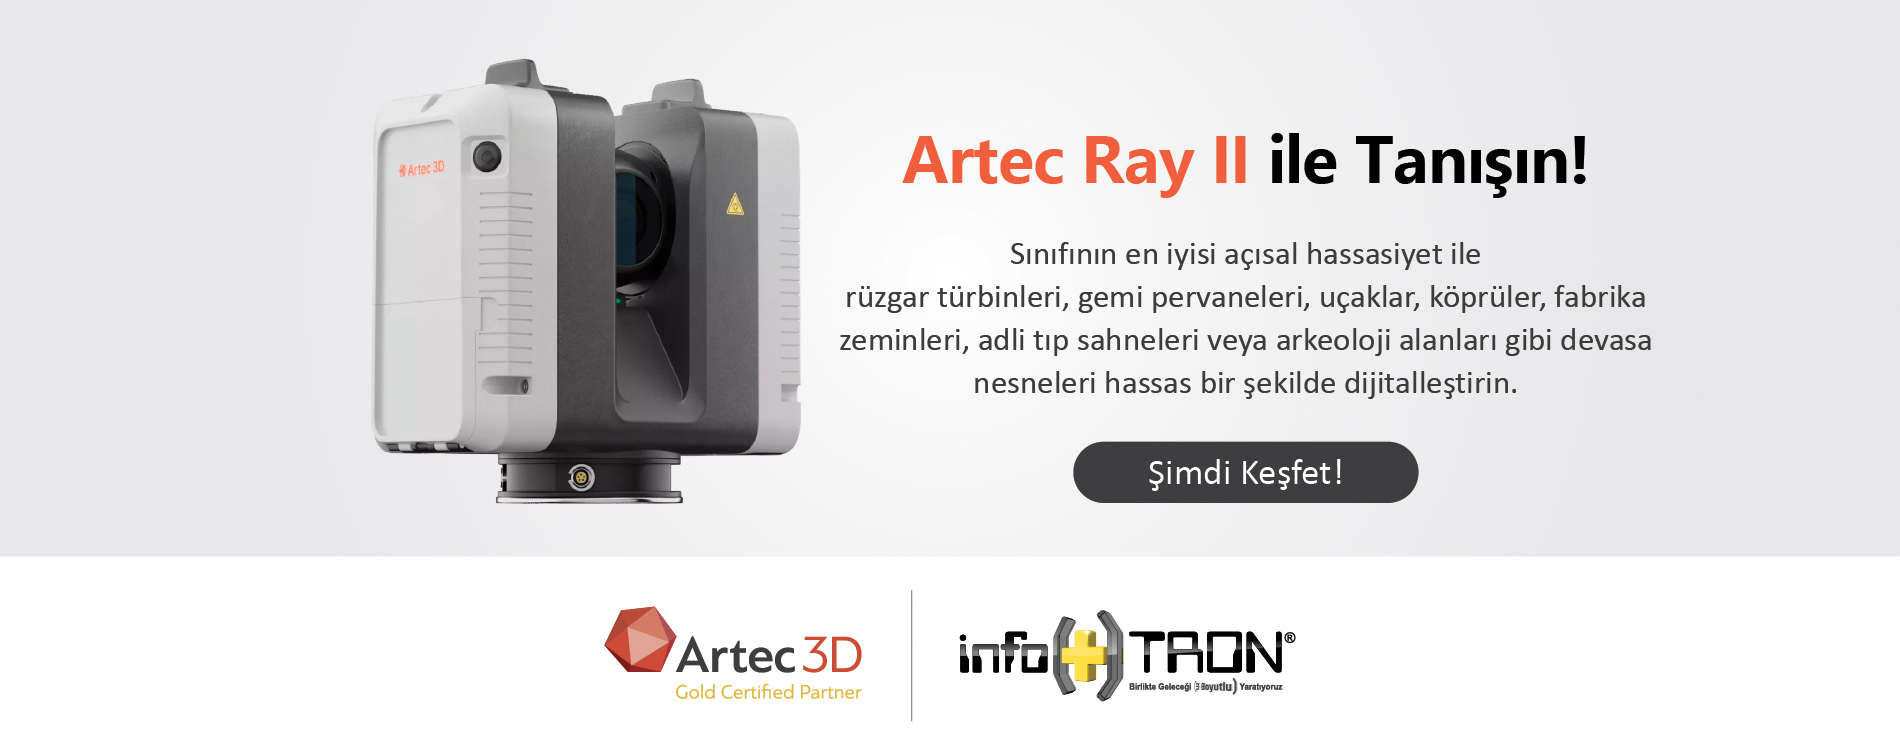 Artec Ray II